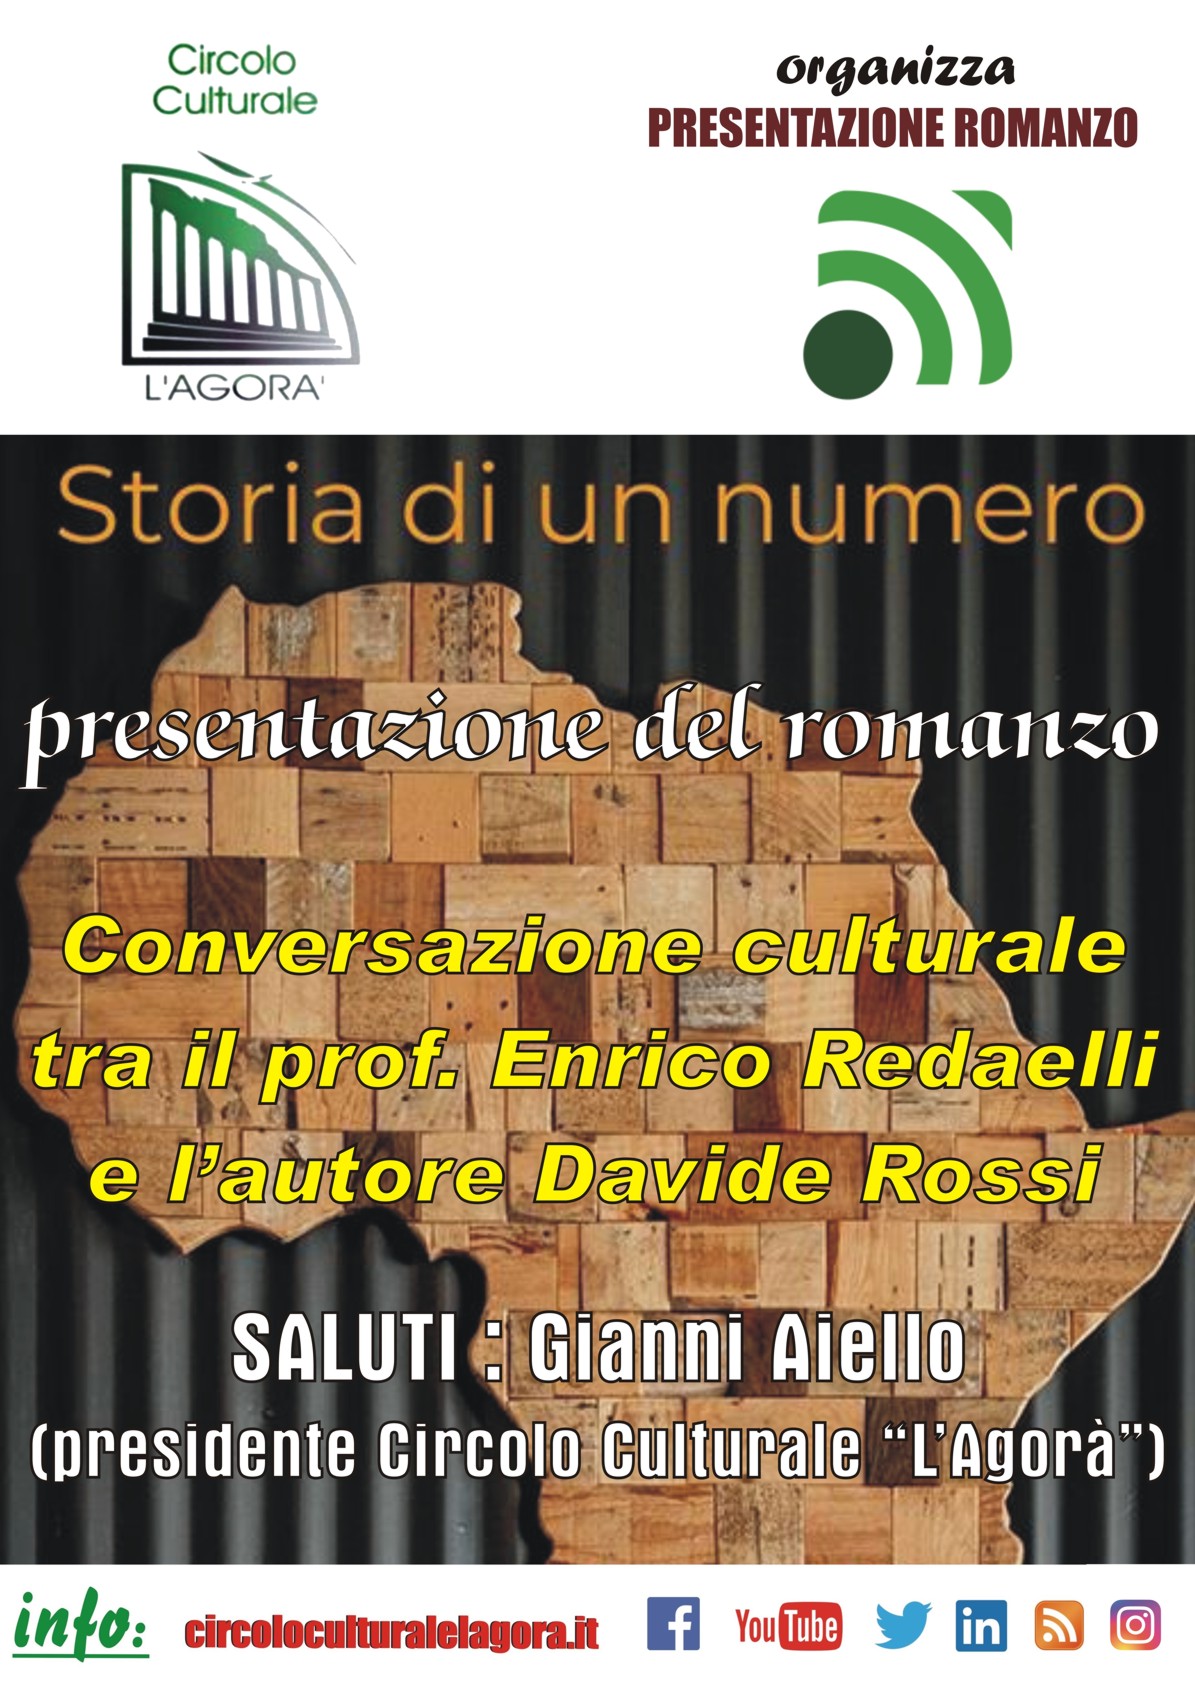 Il Circolo Culturale “L’Agorà”  presenta il romanzo “Storia di un minuto” di Davide Rossi. 